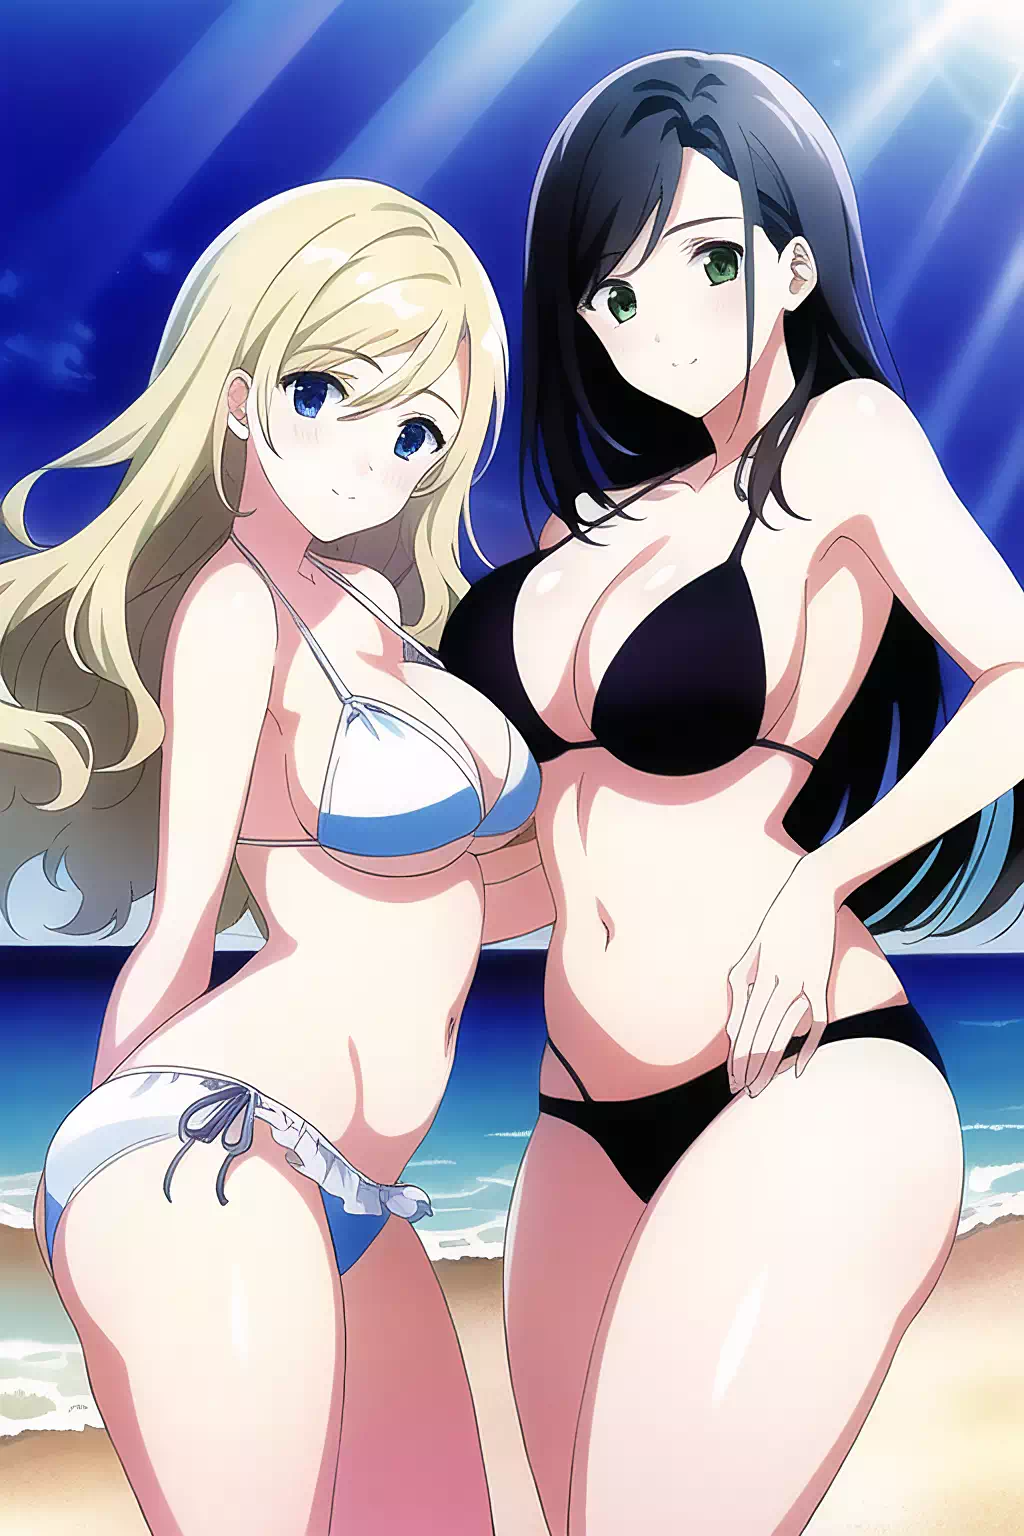 Two girls in bikinis